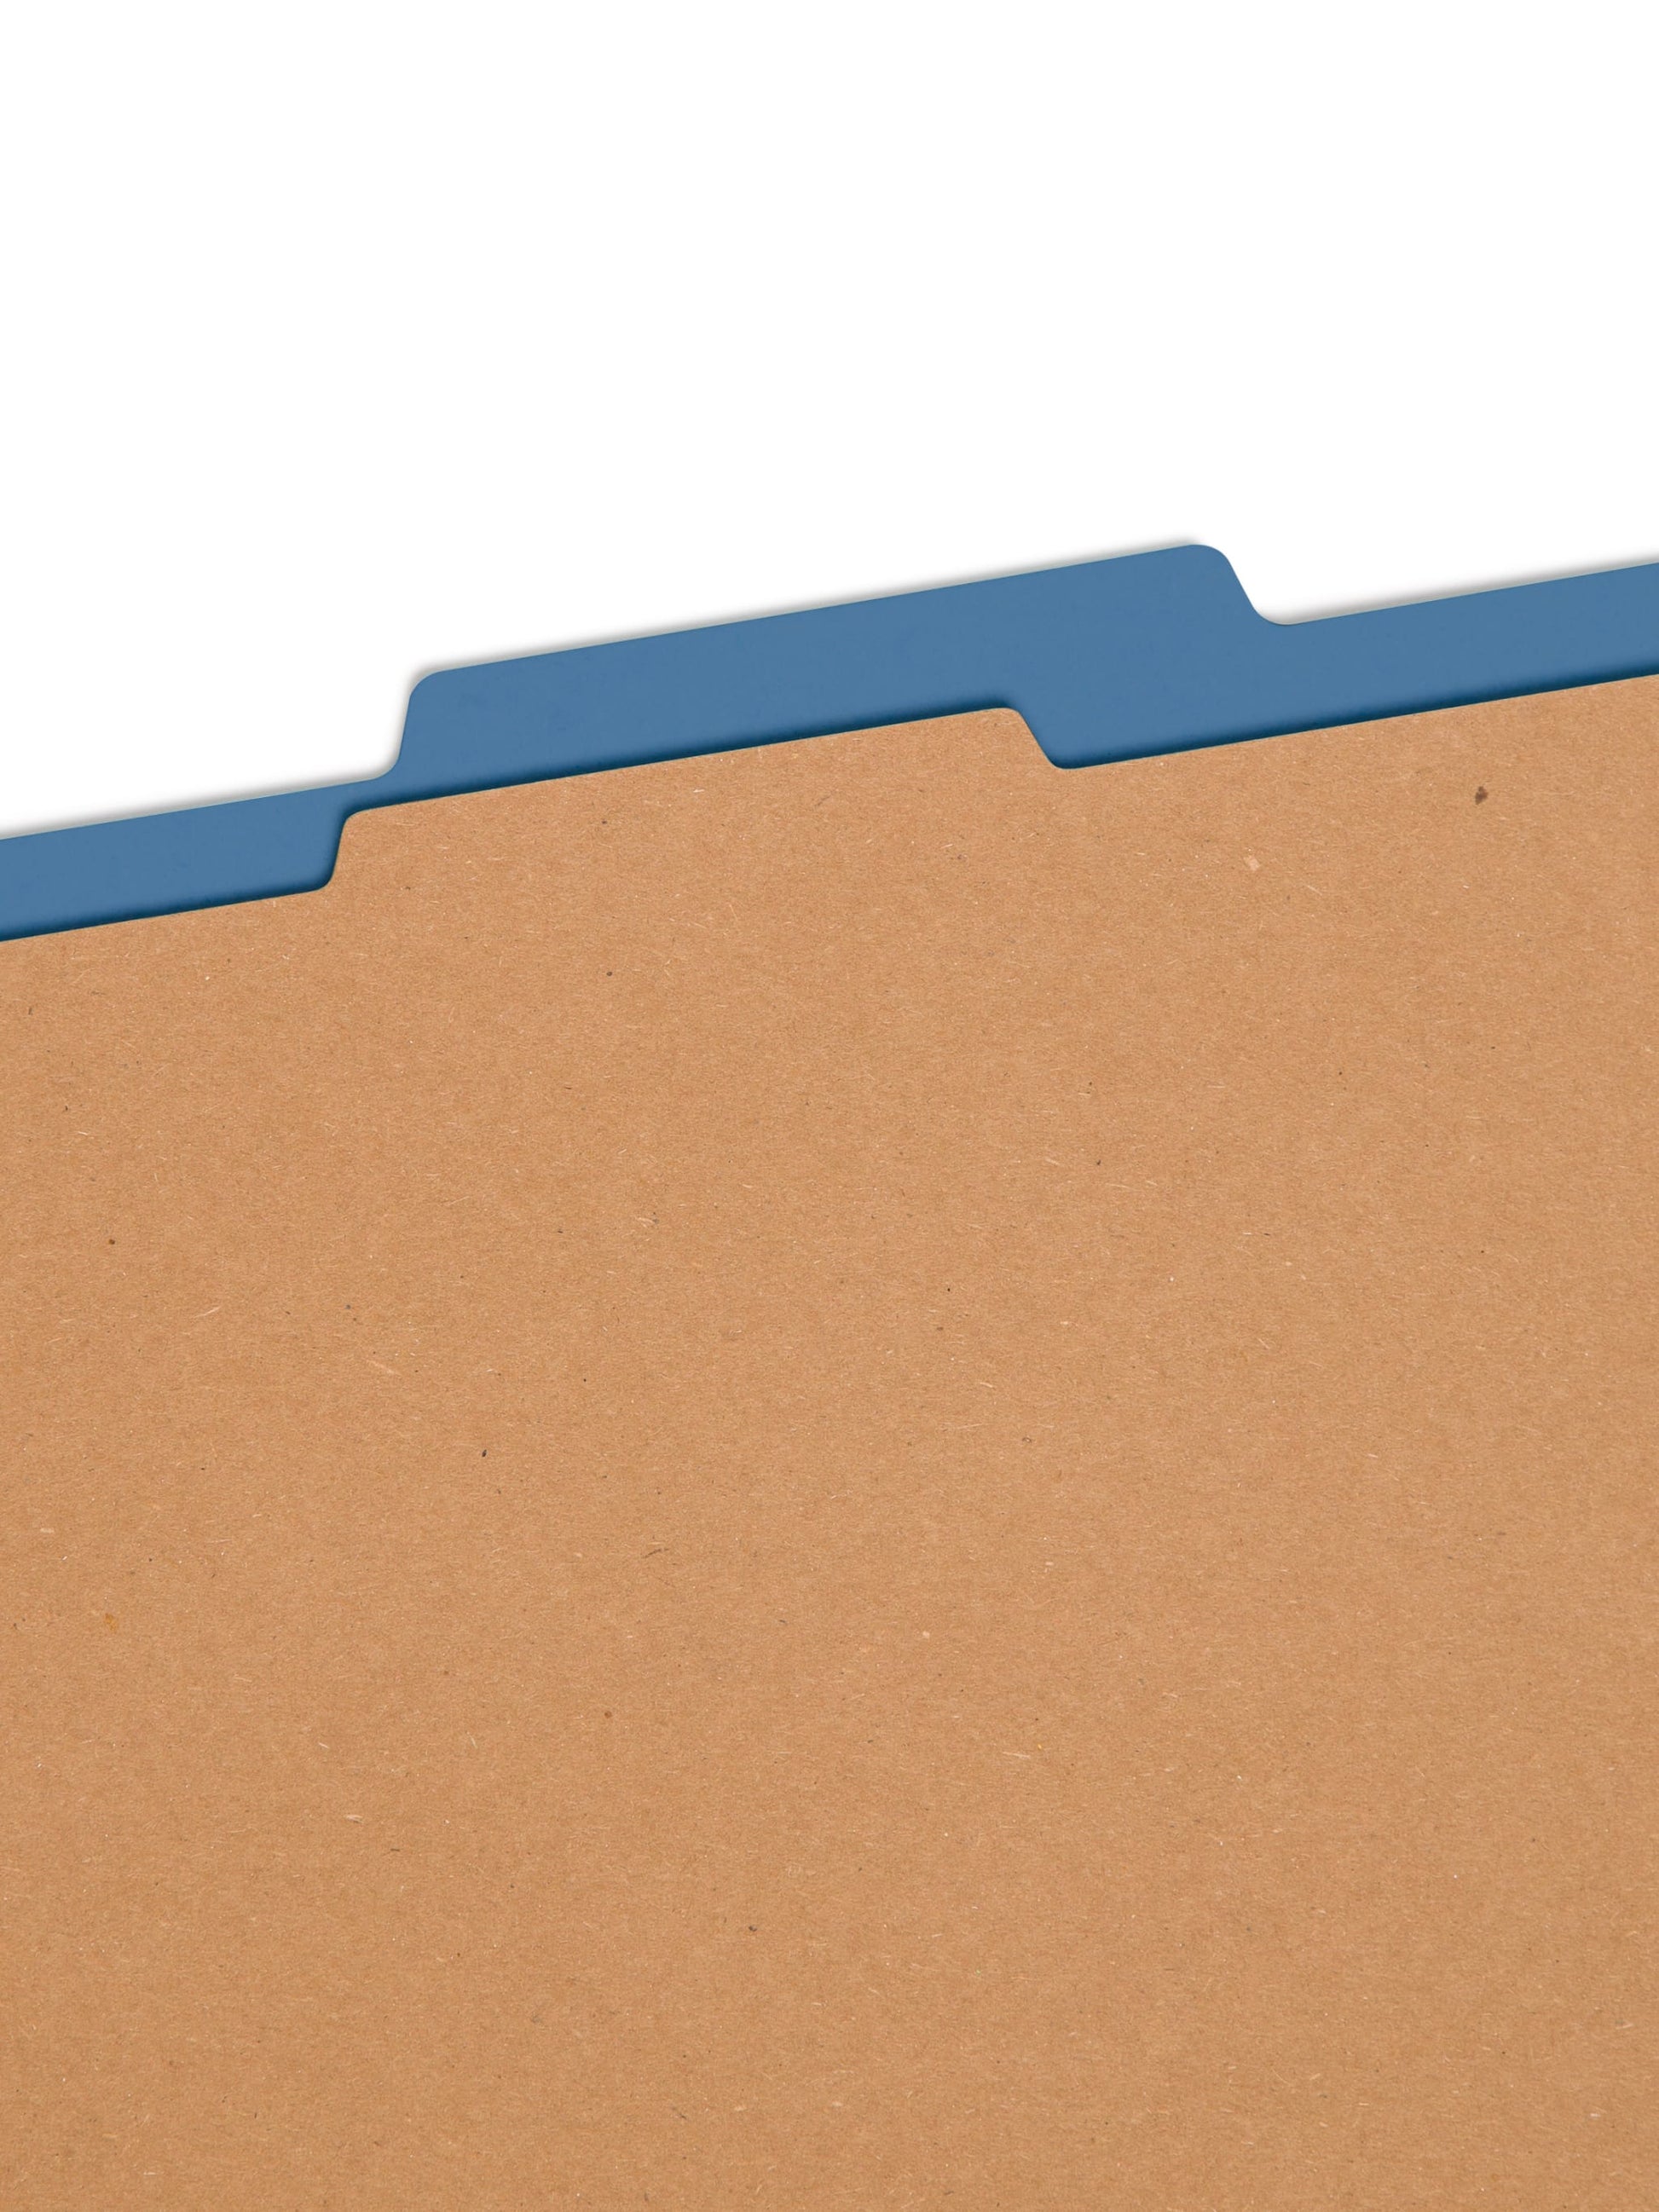 SafeSHIELD® Pressboard Classification File Folders, 1 Divider, 2 inch Expansion, Dark Blue Color, Letter Size, Set of 0, 30086486137325